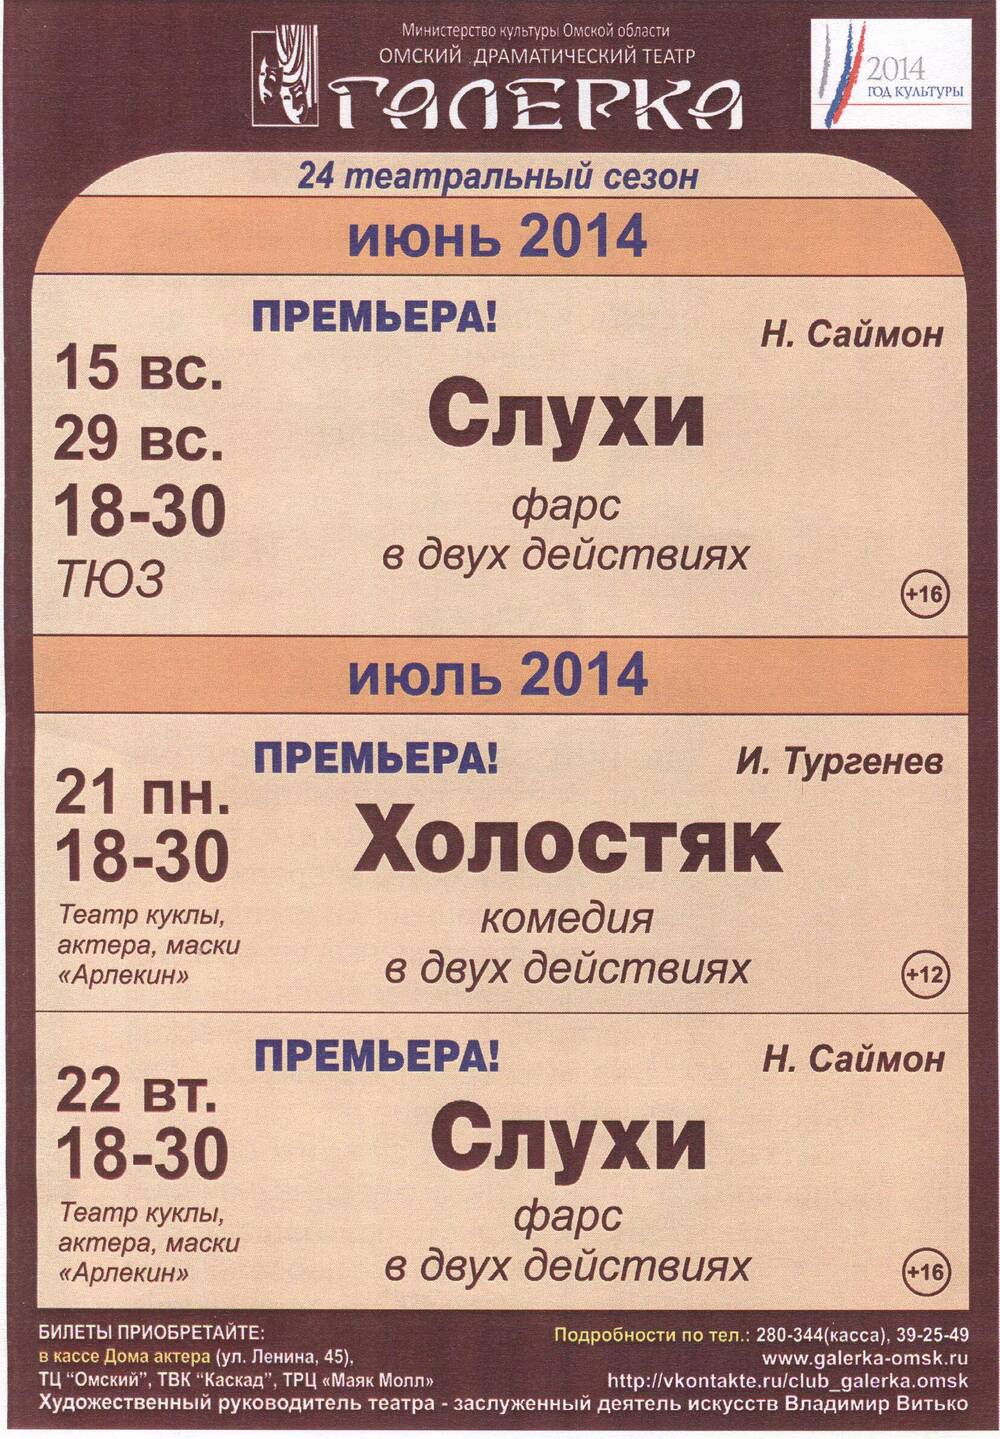 Репертуарный лист на июнь-июль 2014 г. Омский драматический театр Галёрка.